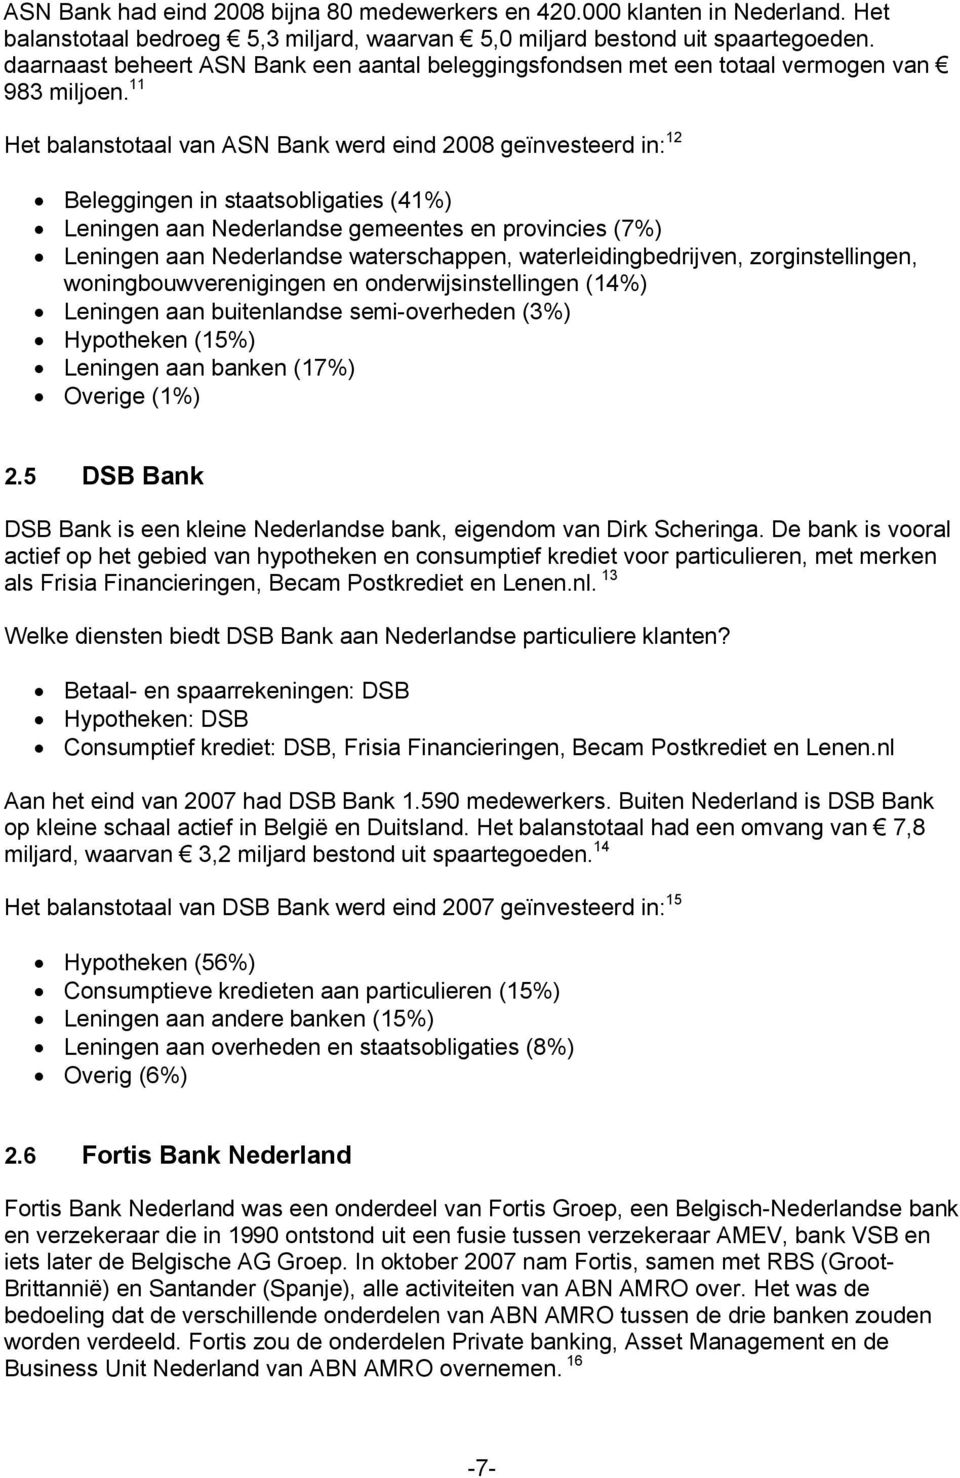 11 Het balanstotaal van ASN Bank werd eind 2008 geïnvesteerd in: 12 Beleggingen in staatsobligaties (41%) Leningen aan Nederlandse gemeentes en provincies (7%) Leningen aan Nederlandse waterschappen,